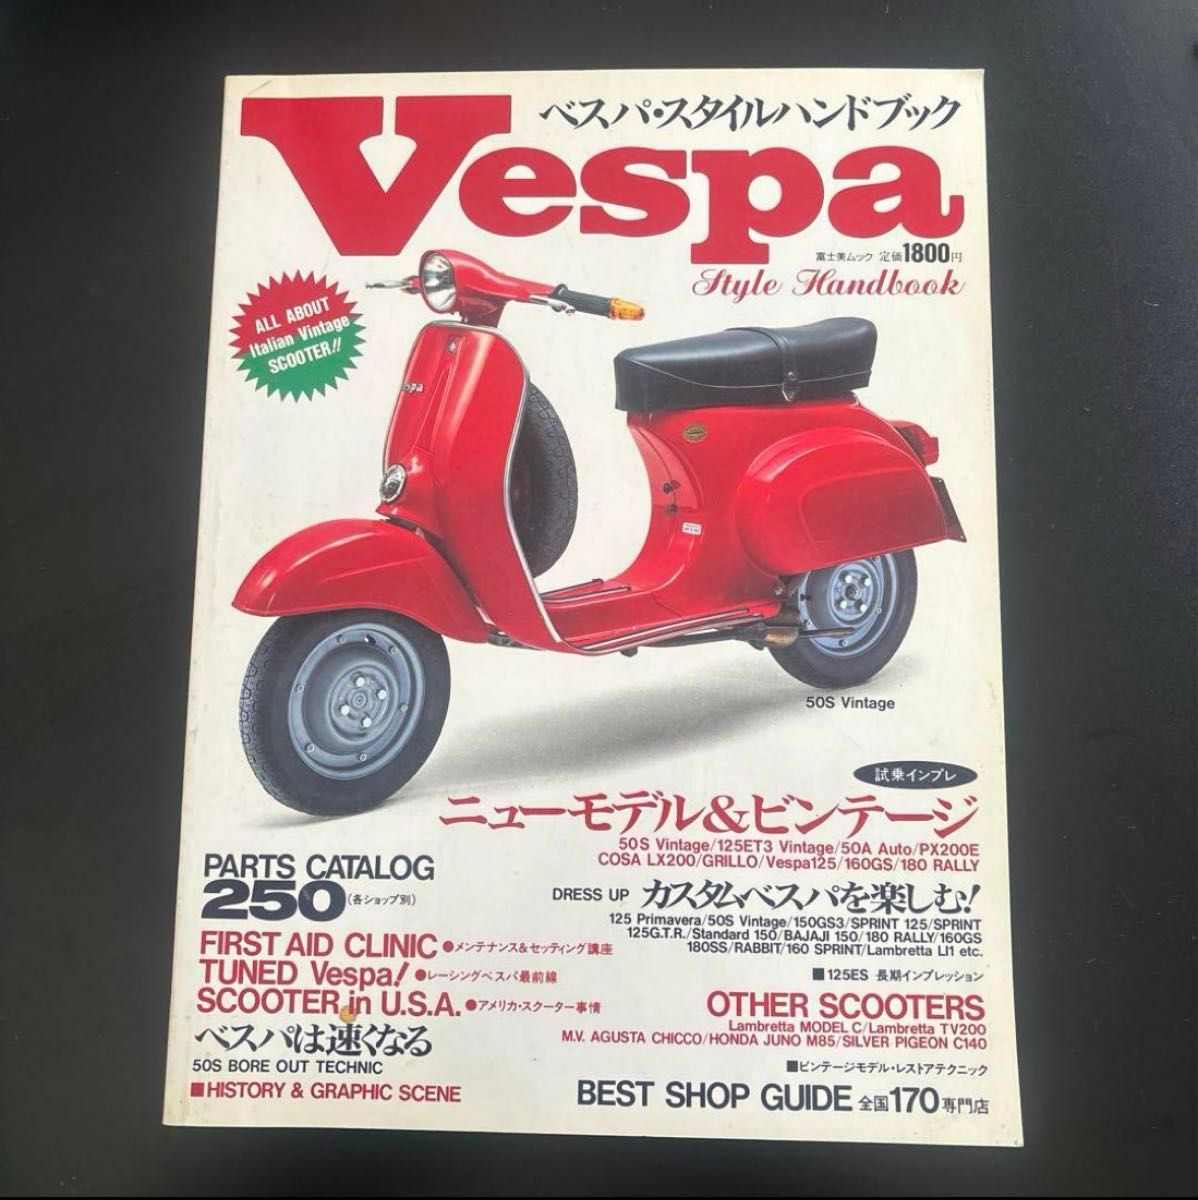 Vespa ベスパ・スタイルハンドブック